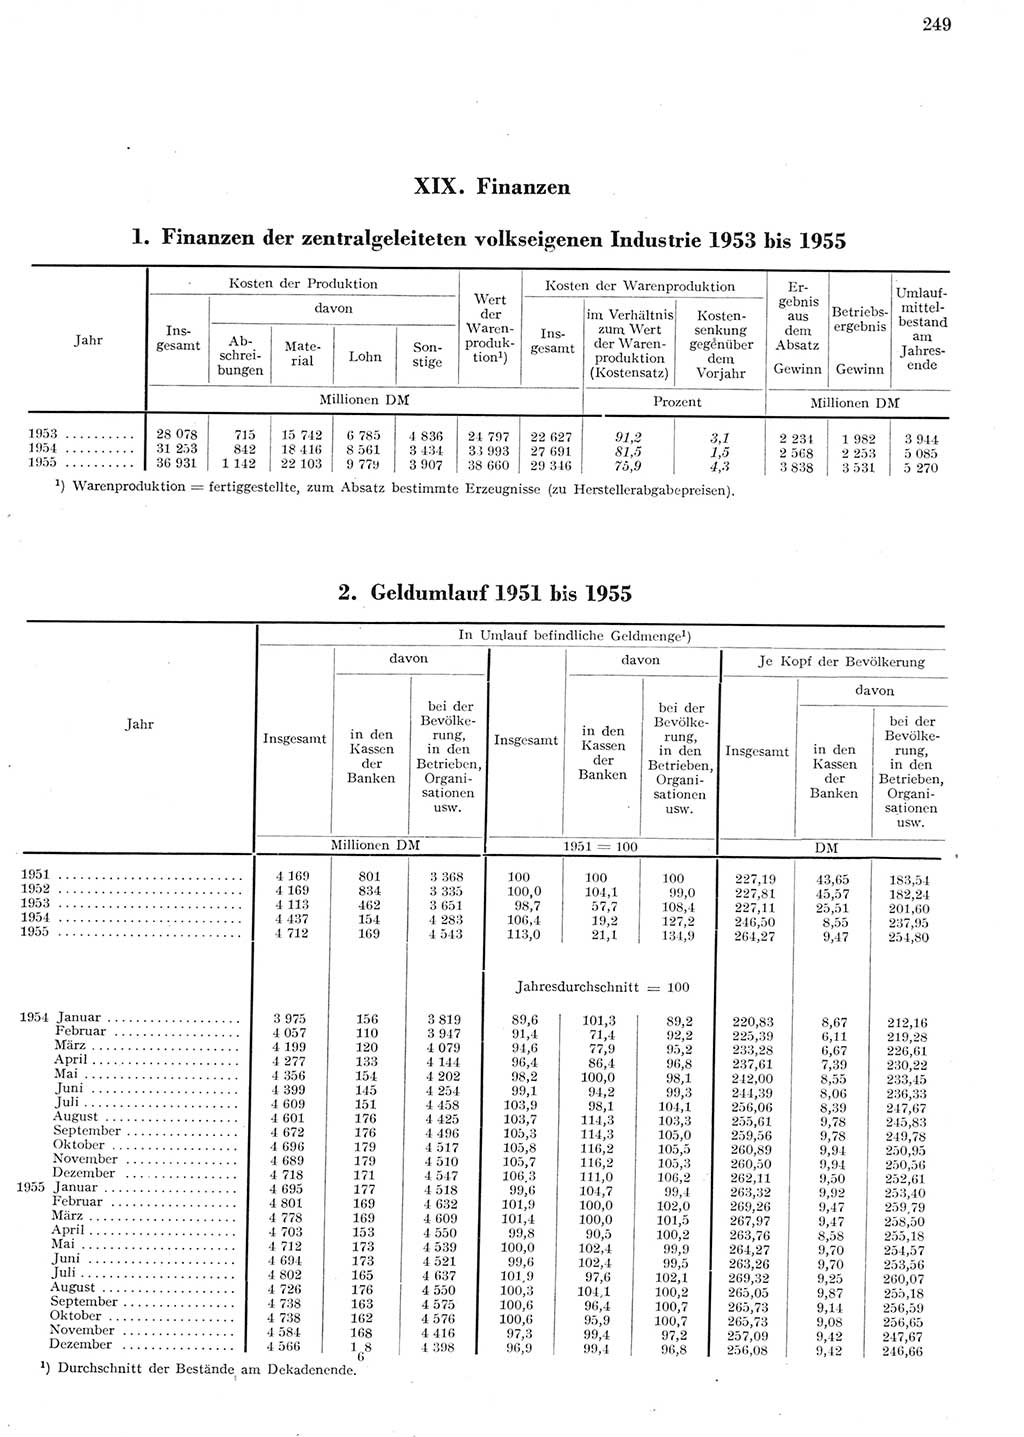 Statistisches Jahrbuch der Deutschen Demokratischen Republik (DDR) 1955, Seite 249 (Stat. Jb. DDR 1955, S. 249)